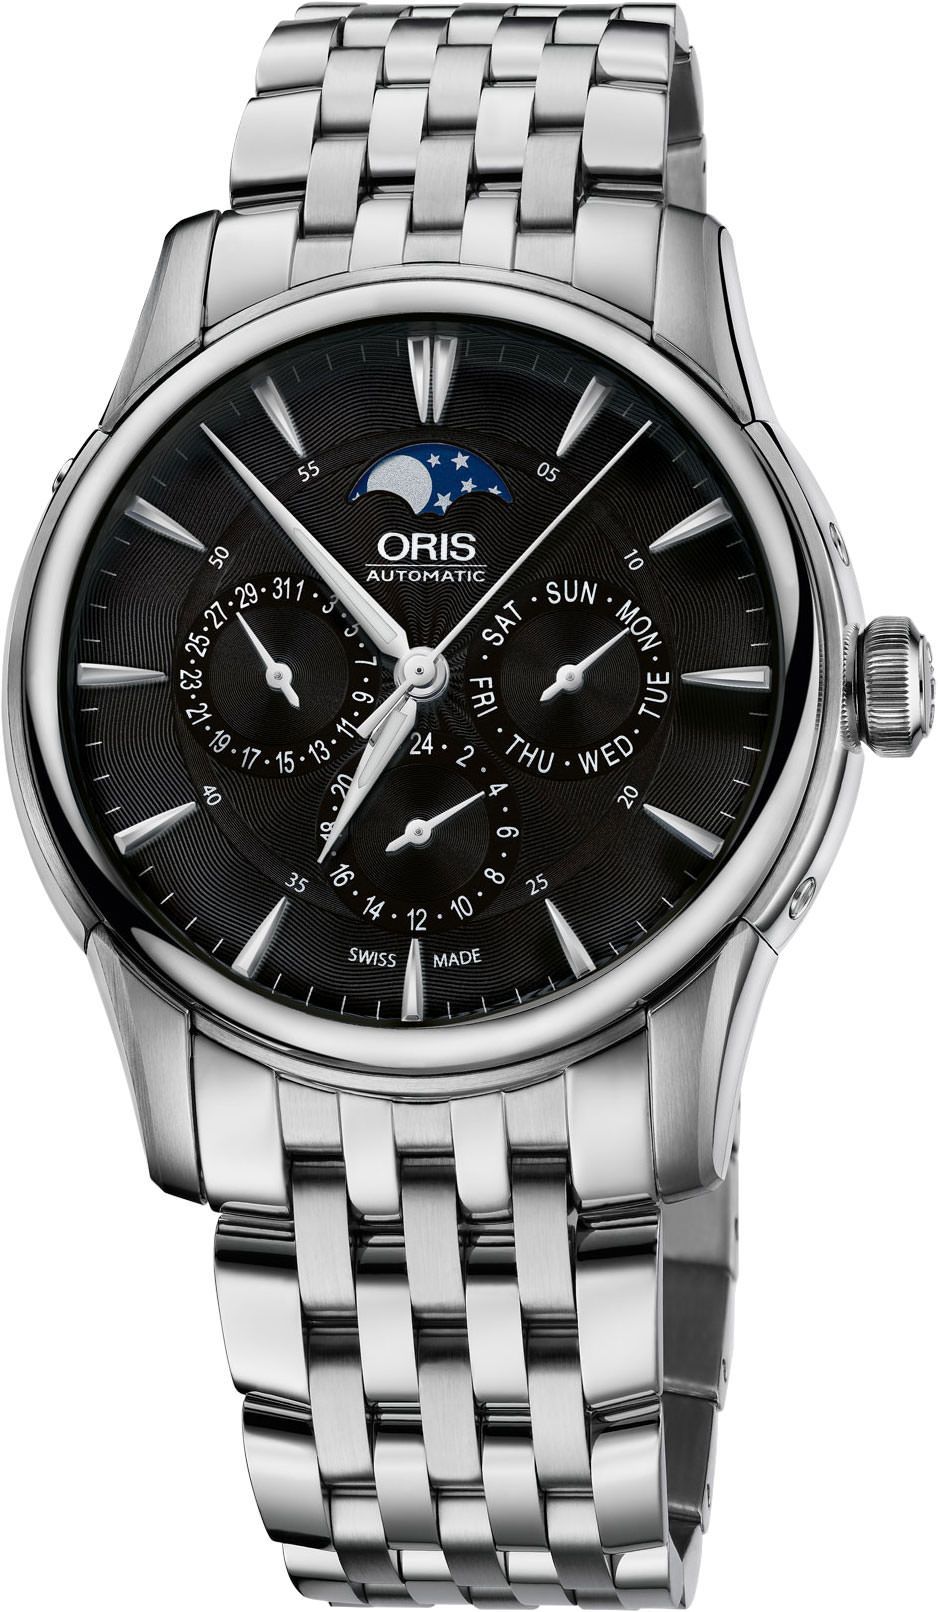 Oris Culture Artelier Black Dial 40.5 mm Automatic Watch For Men - 1